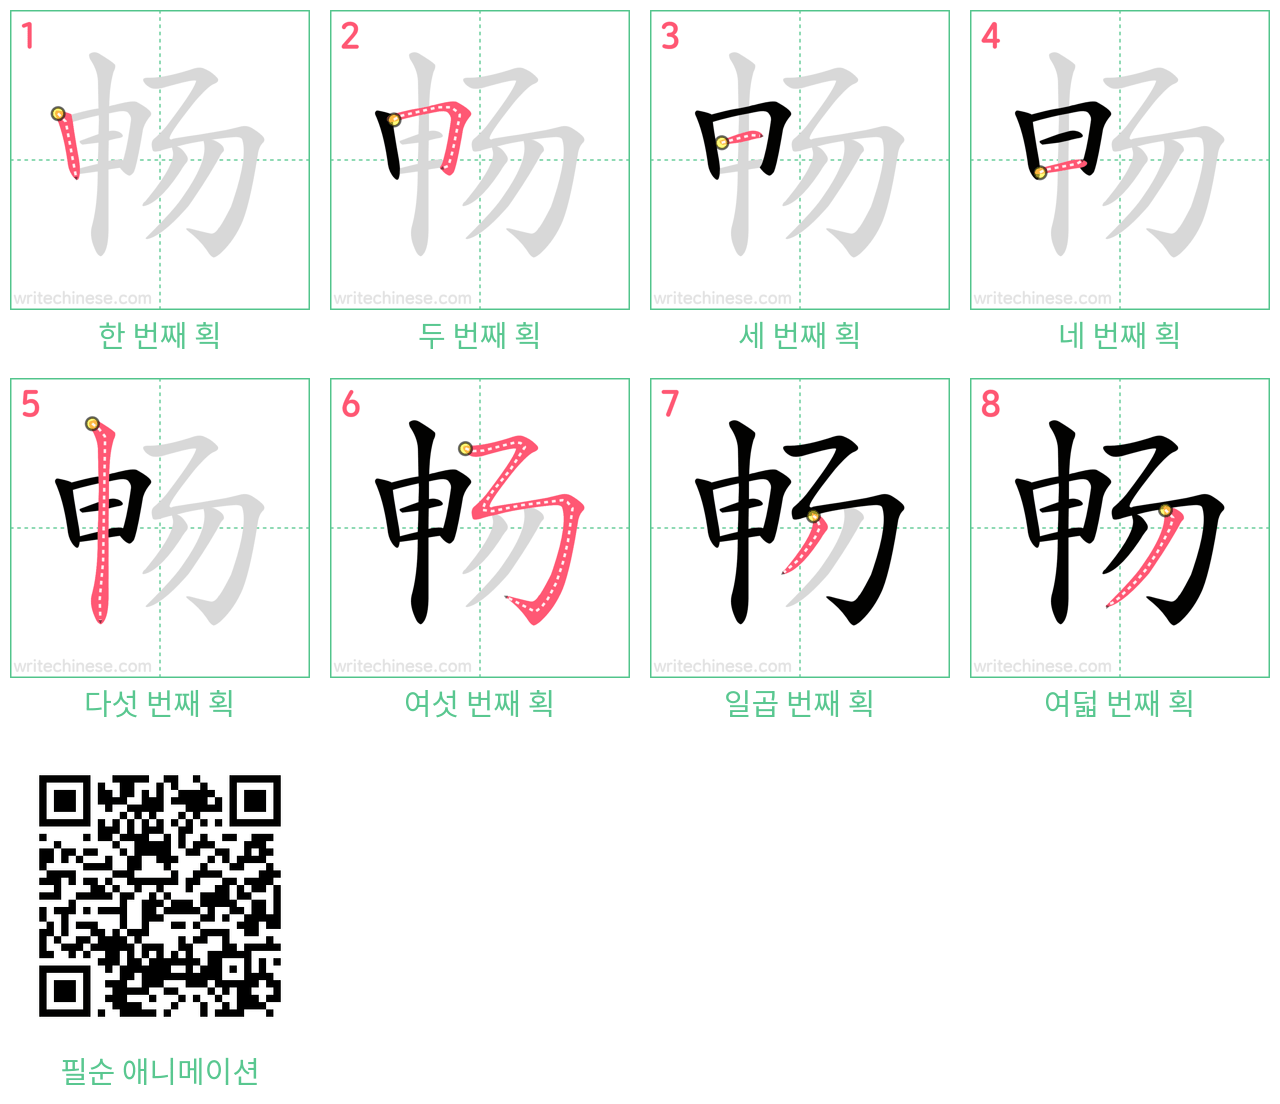 畅 step-by-step stroke order diagrams